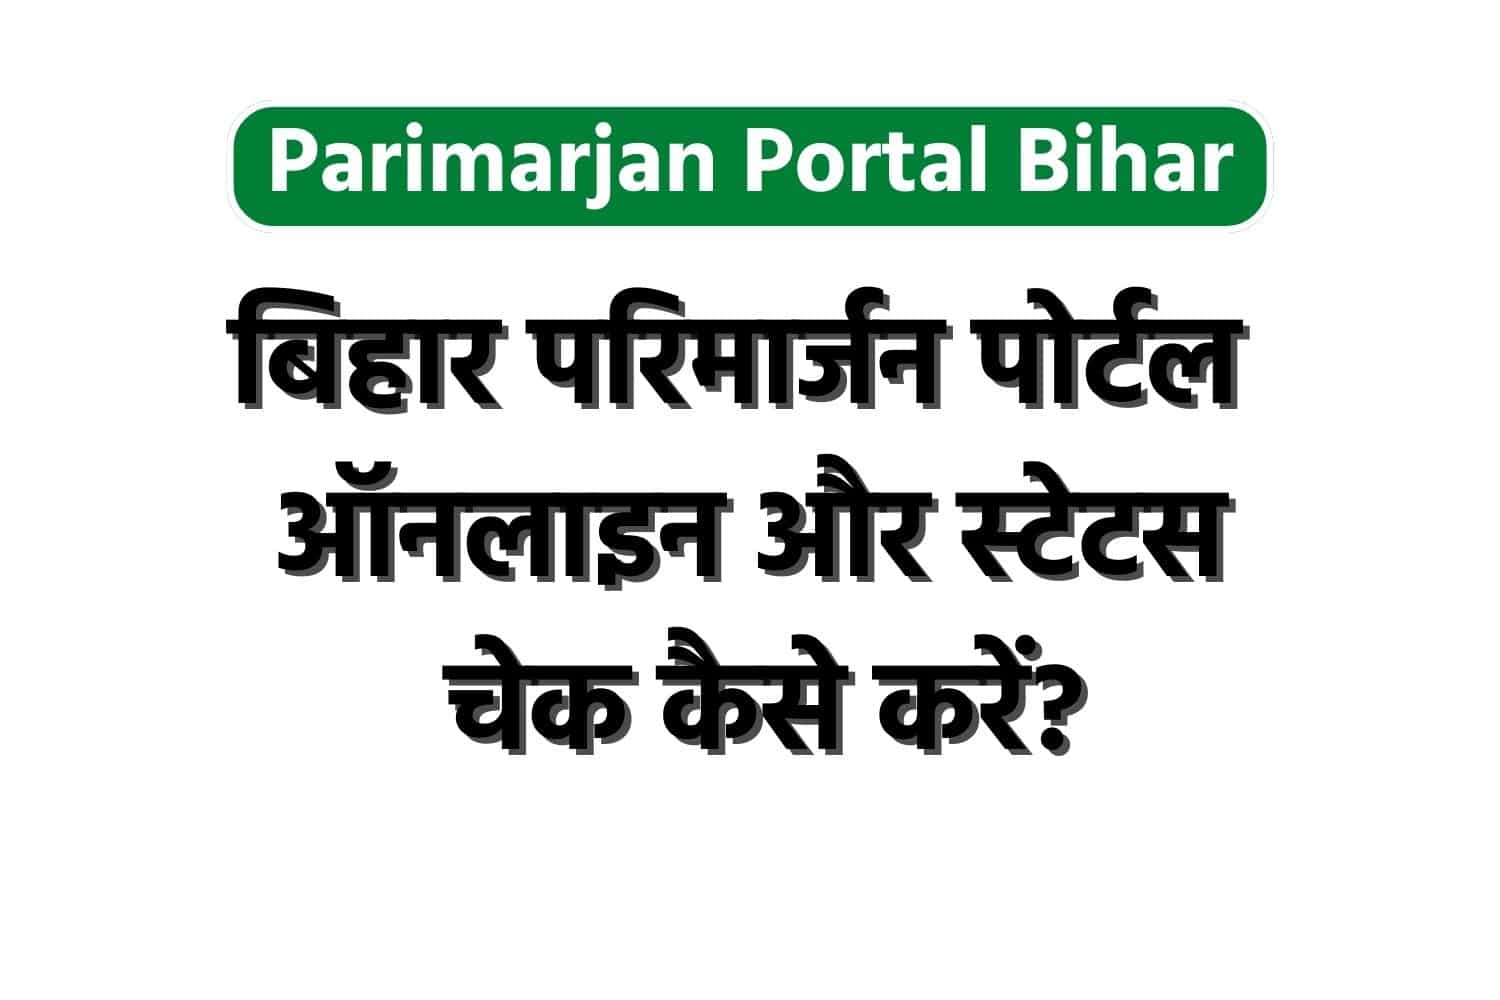 Parimarjan Portal Bihar : बिहार परिमार्जन पोर्टल ऑनलाइन और स्टेटस चेक कैसे करें?